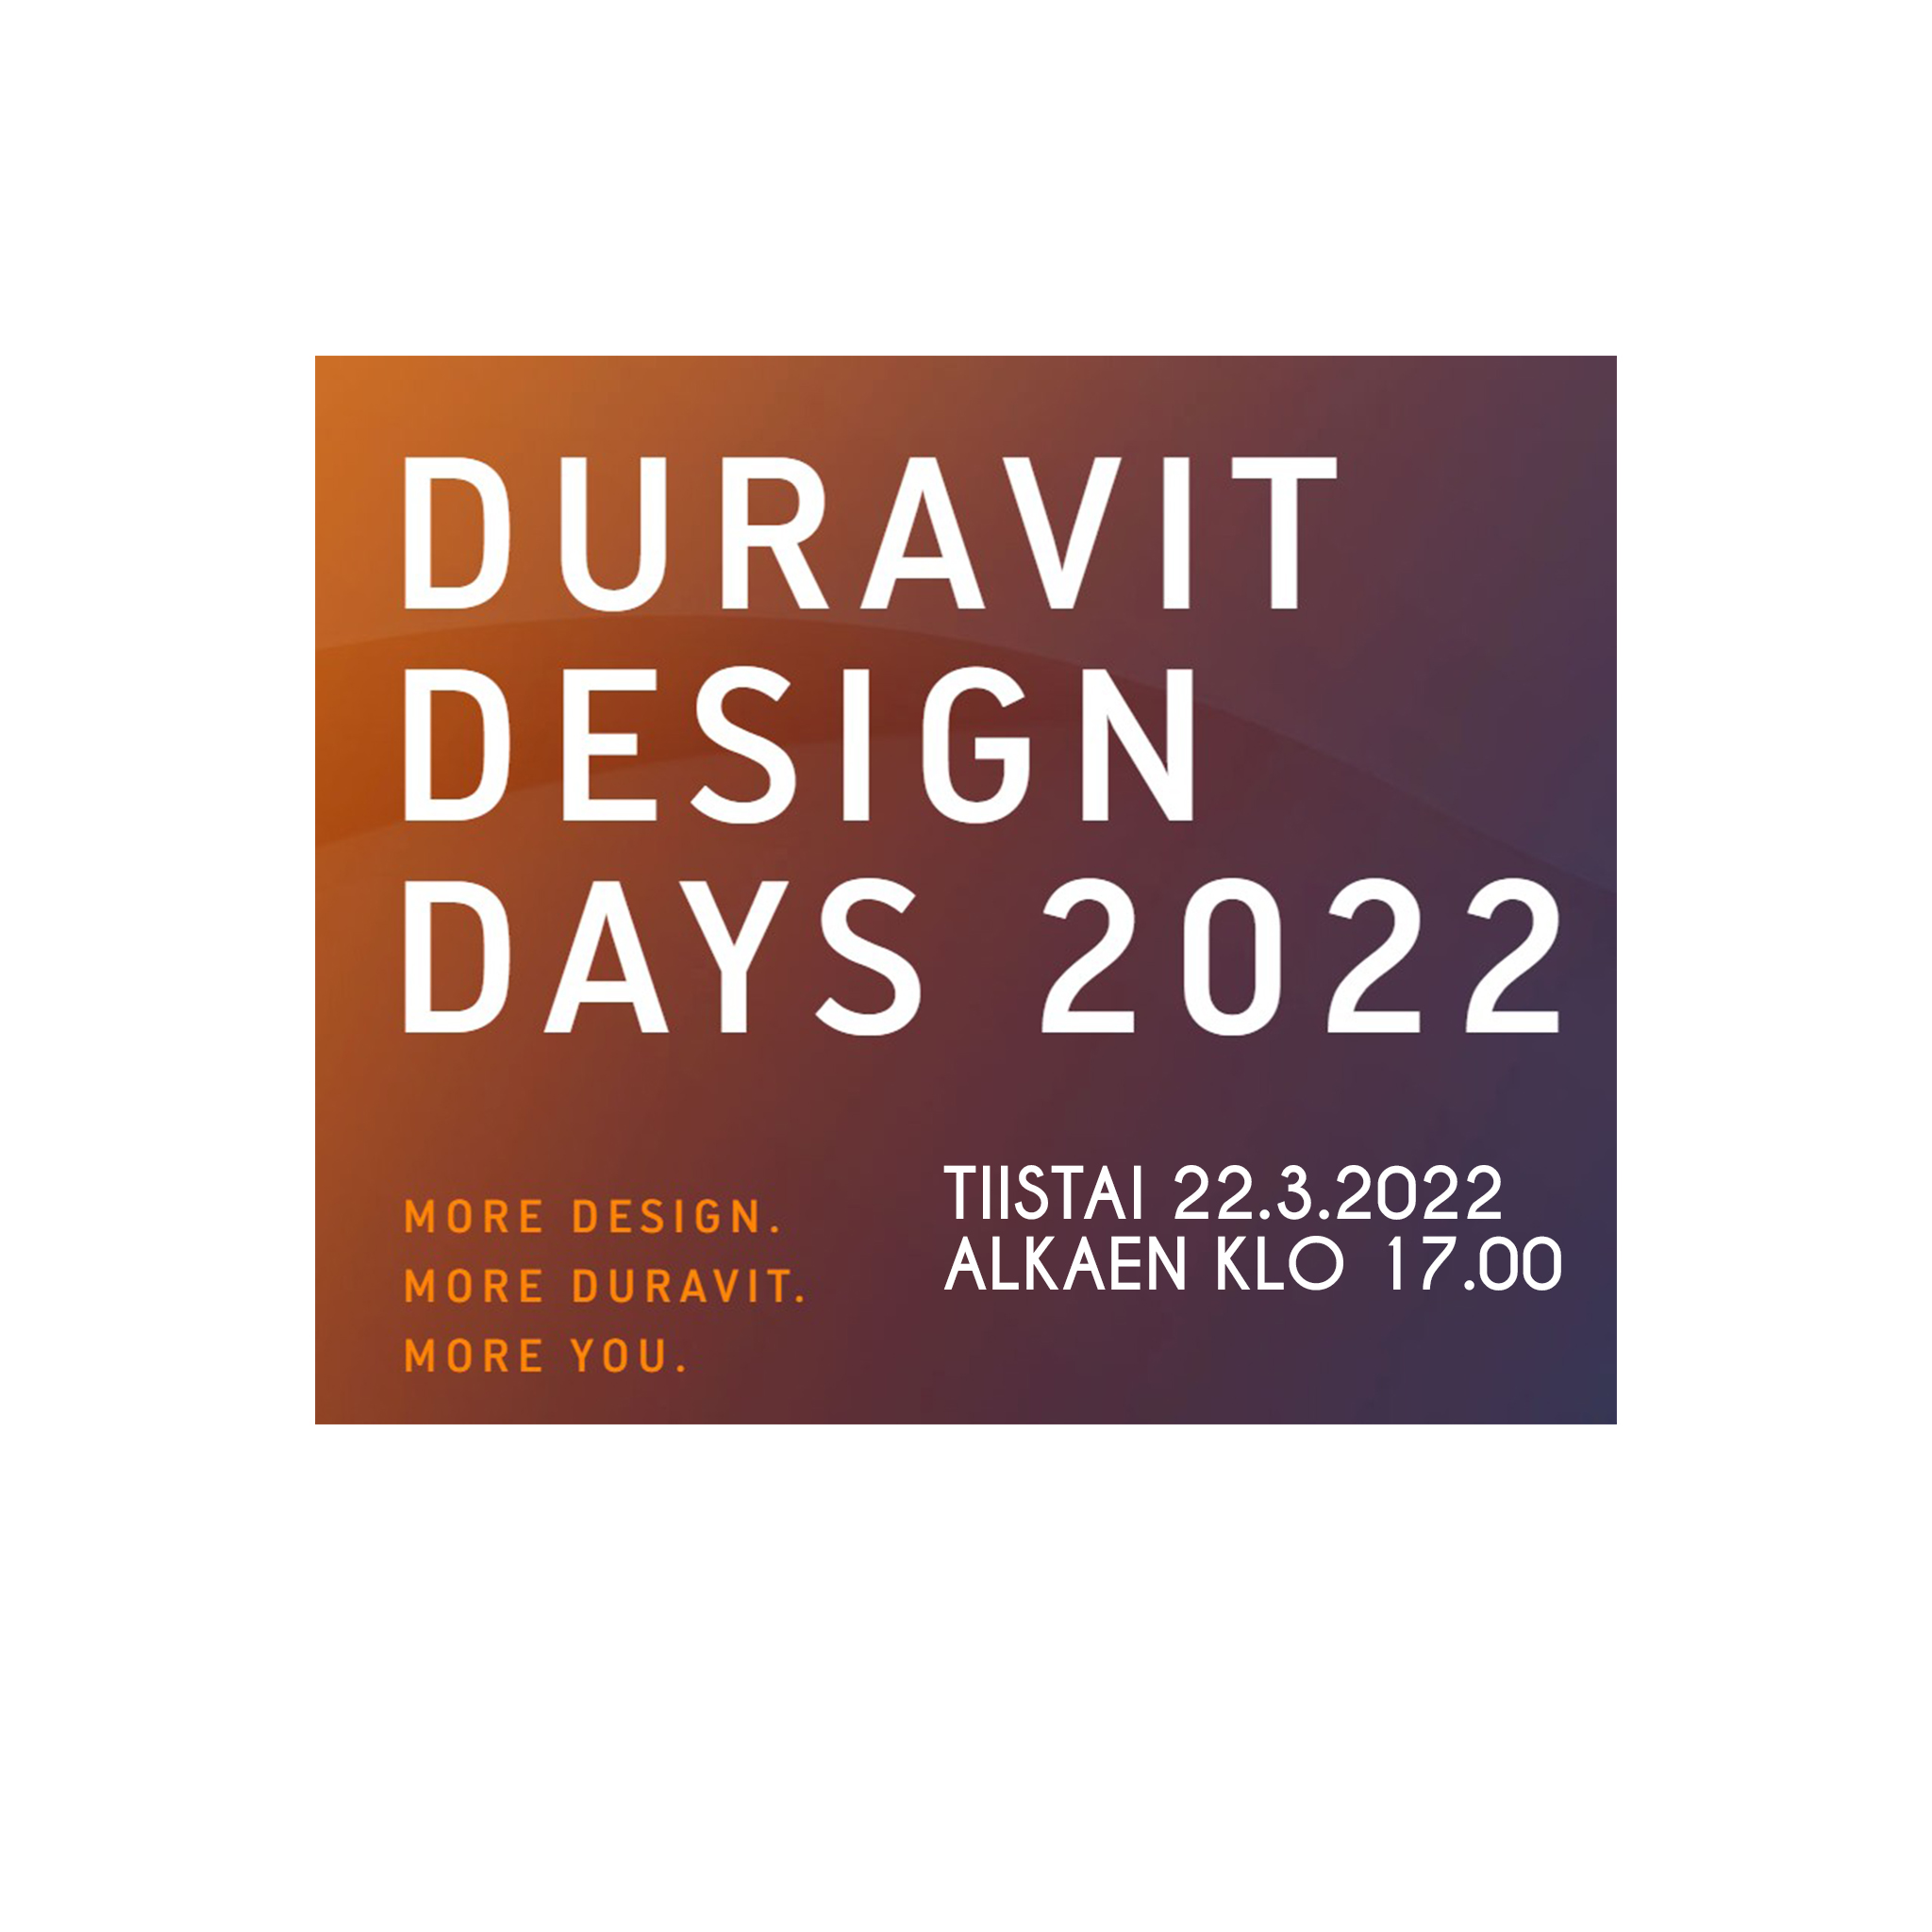 Duravit Design Days